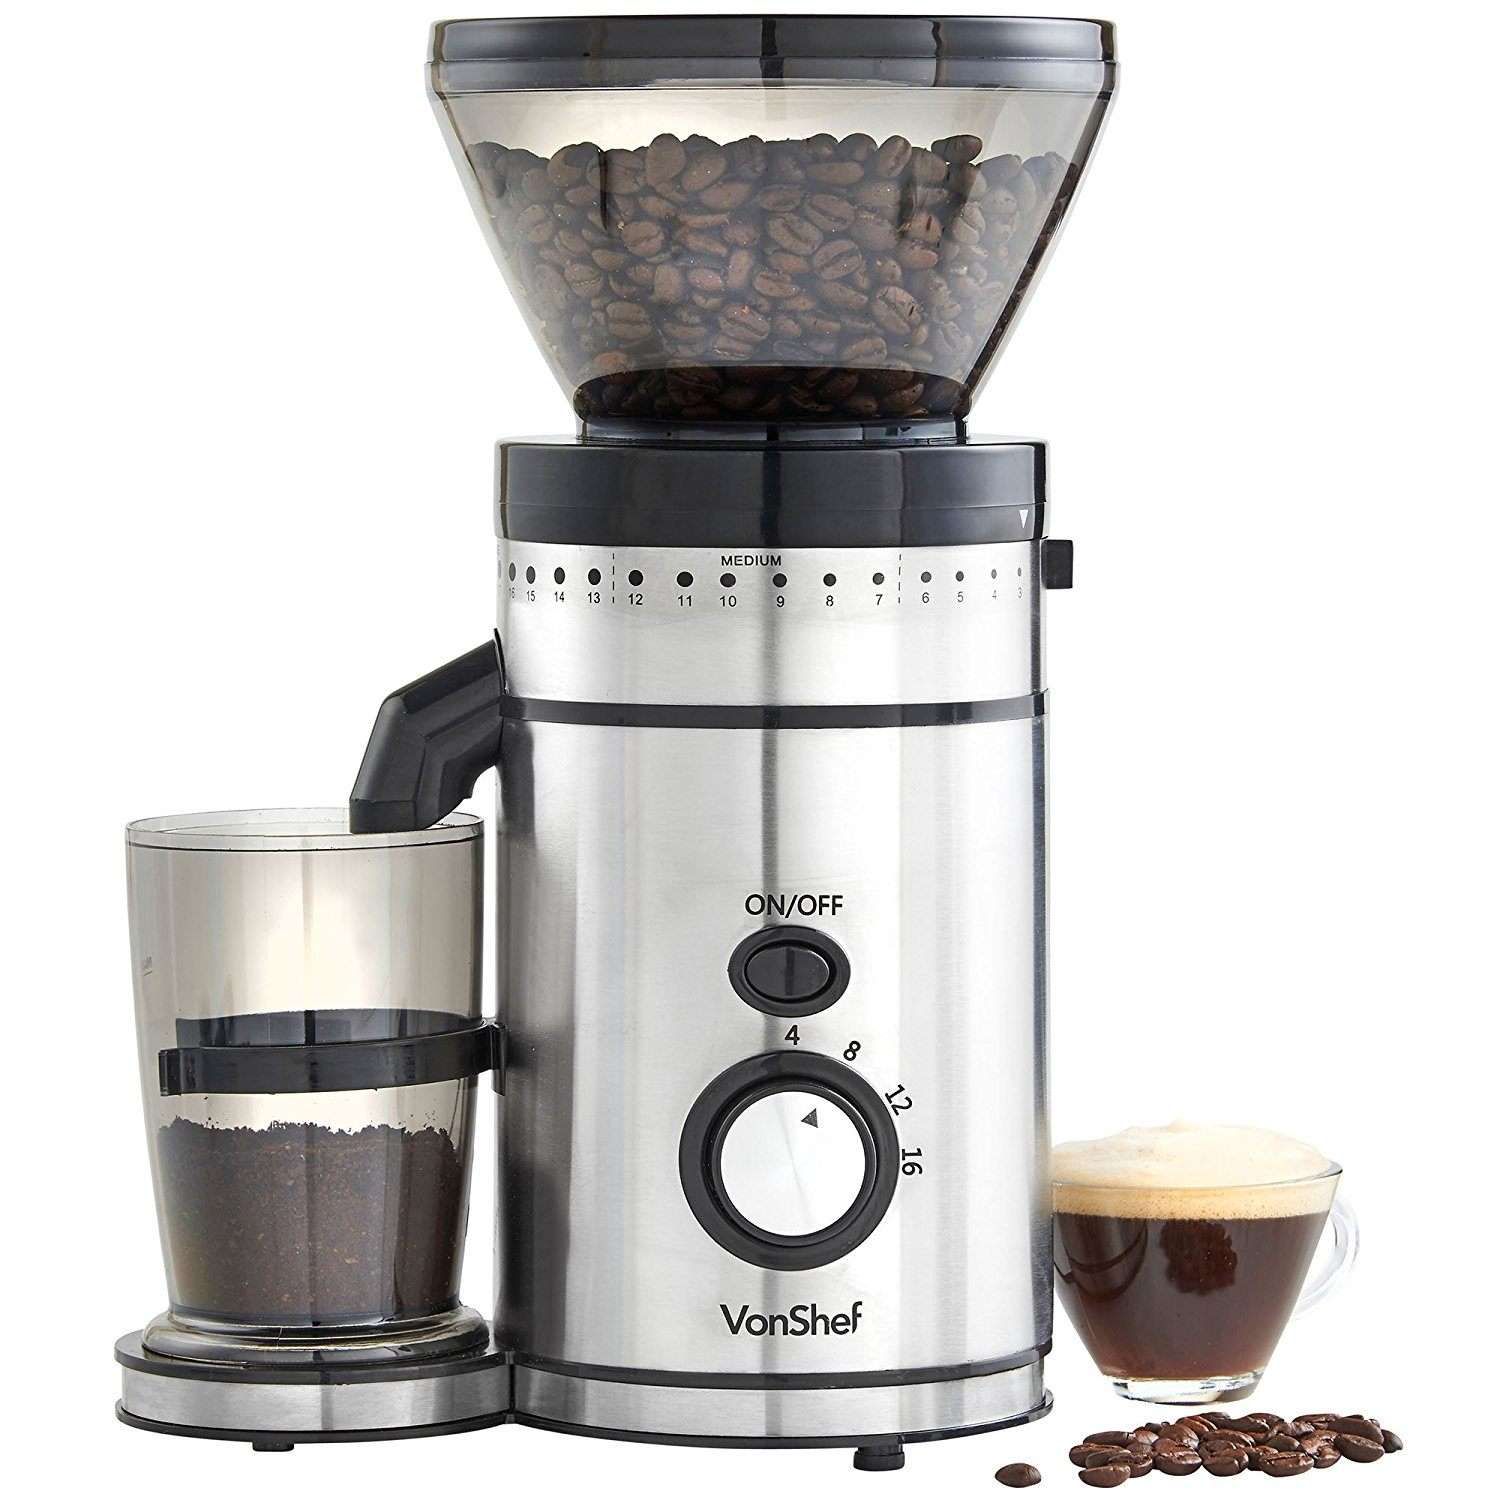 VonShef Premium Burr Coffee Grinder Review 2019